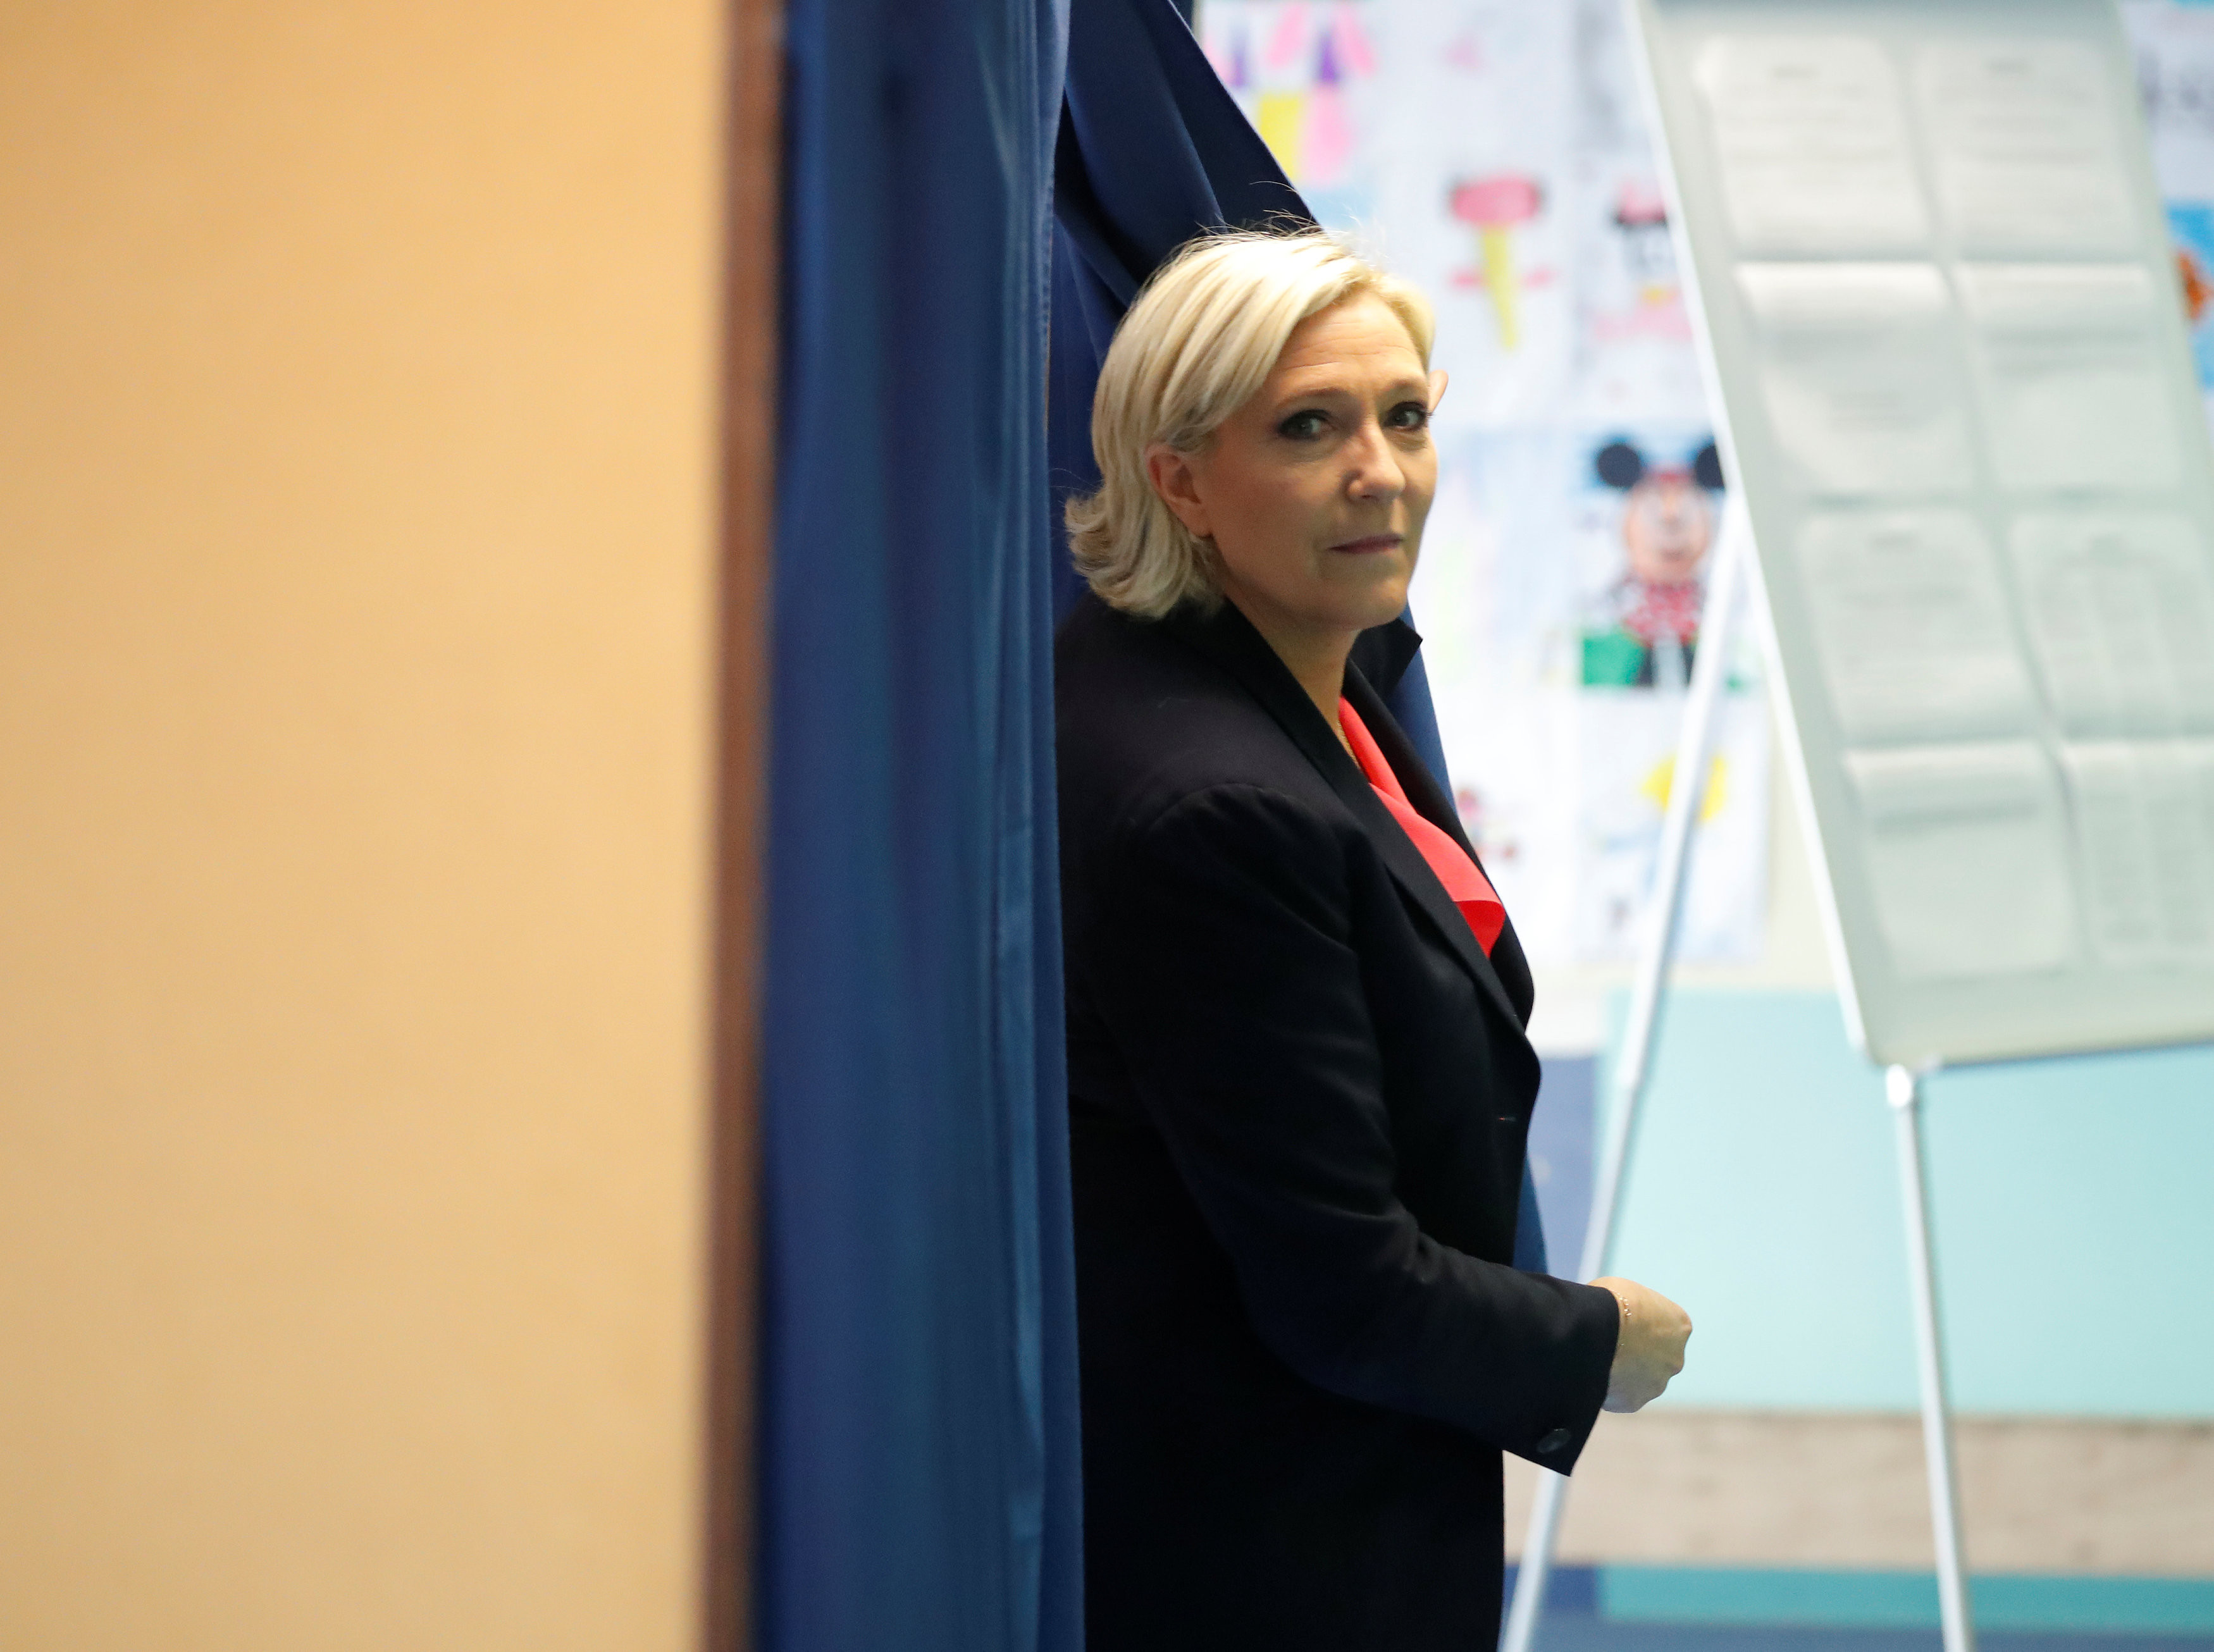 Лидер партии "Национальный фронт" Марин Ле Пен. Фото: &copy; REUTERS/Charles Platiau